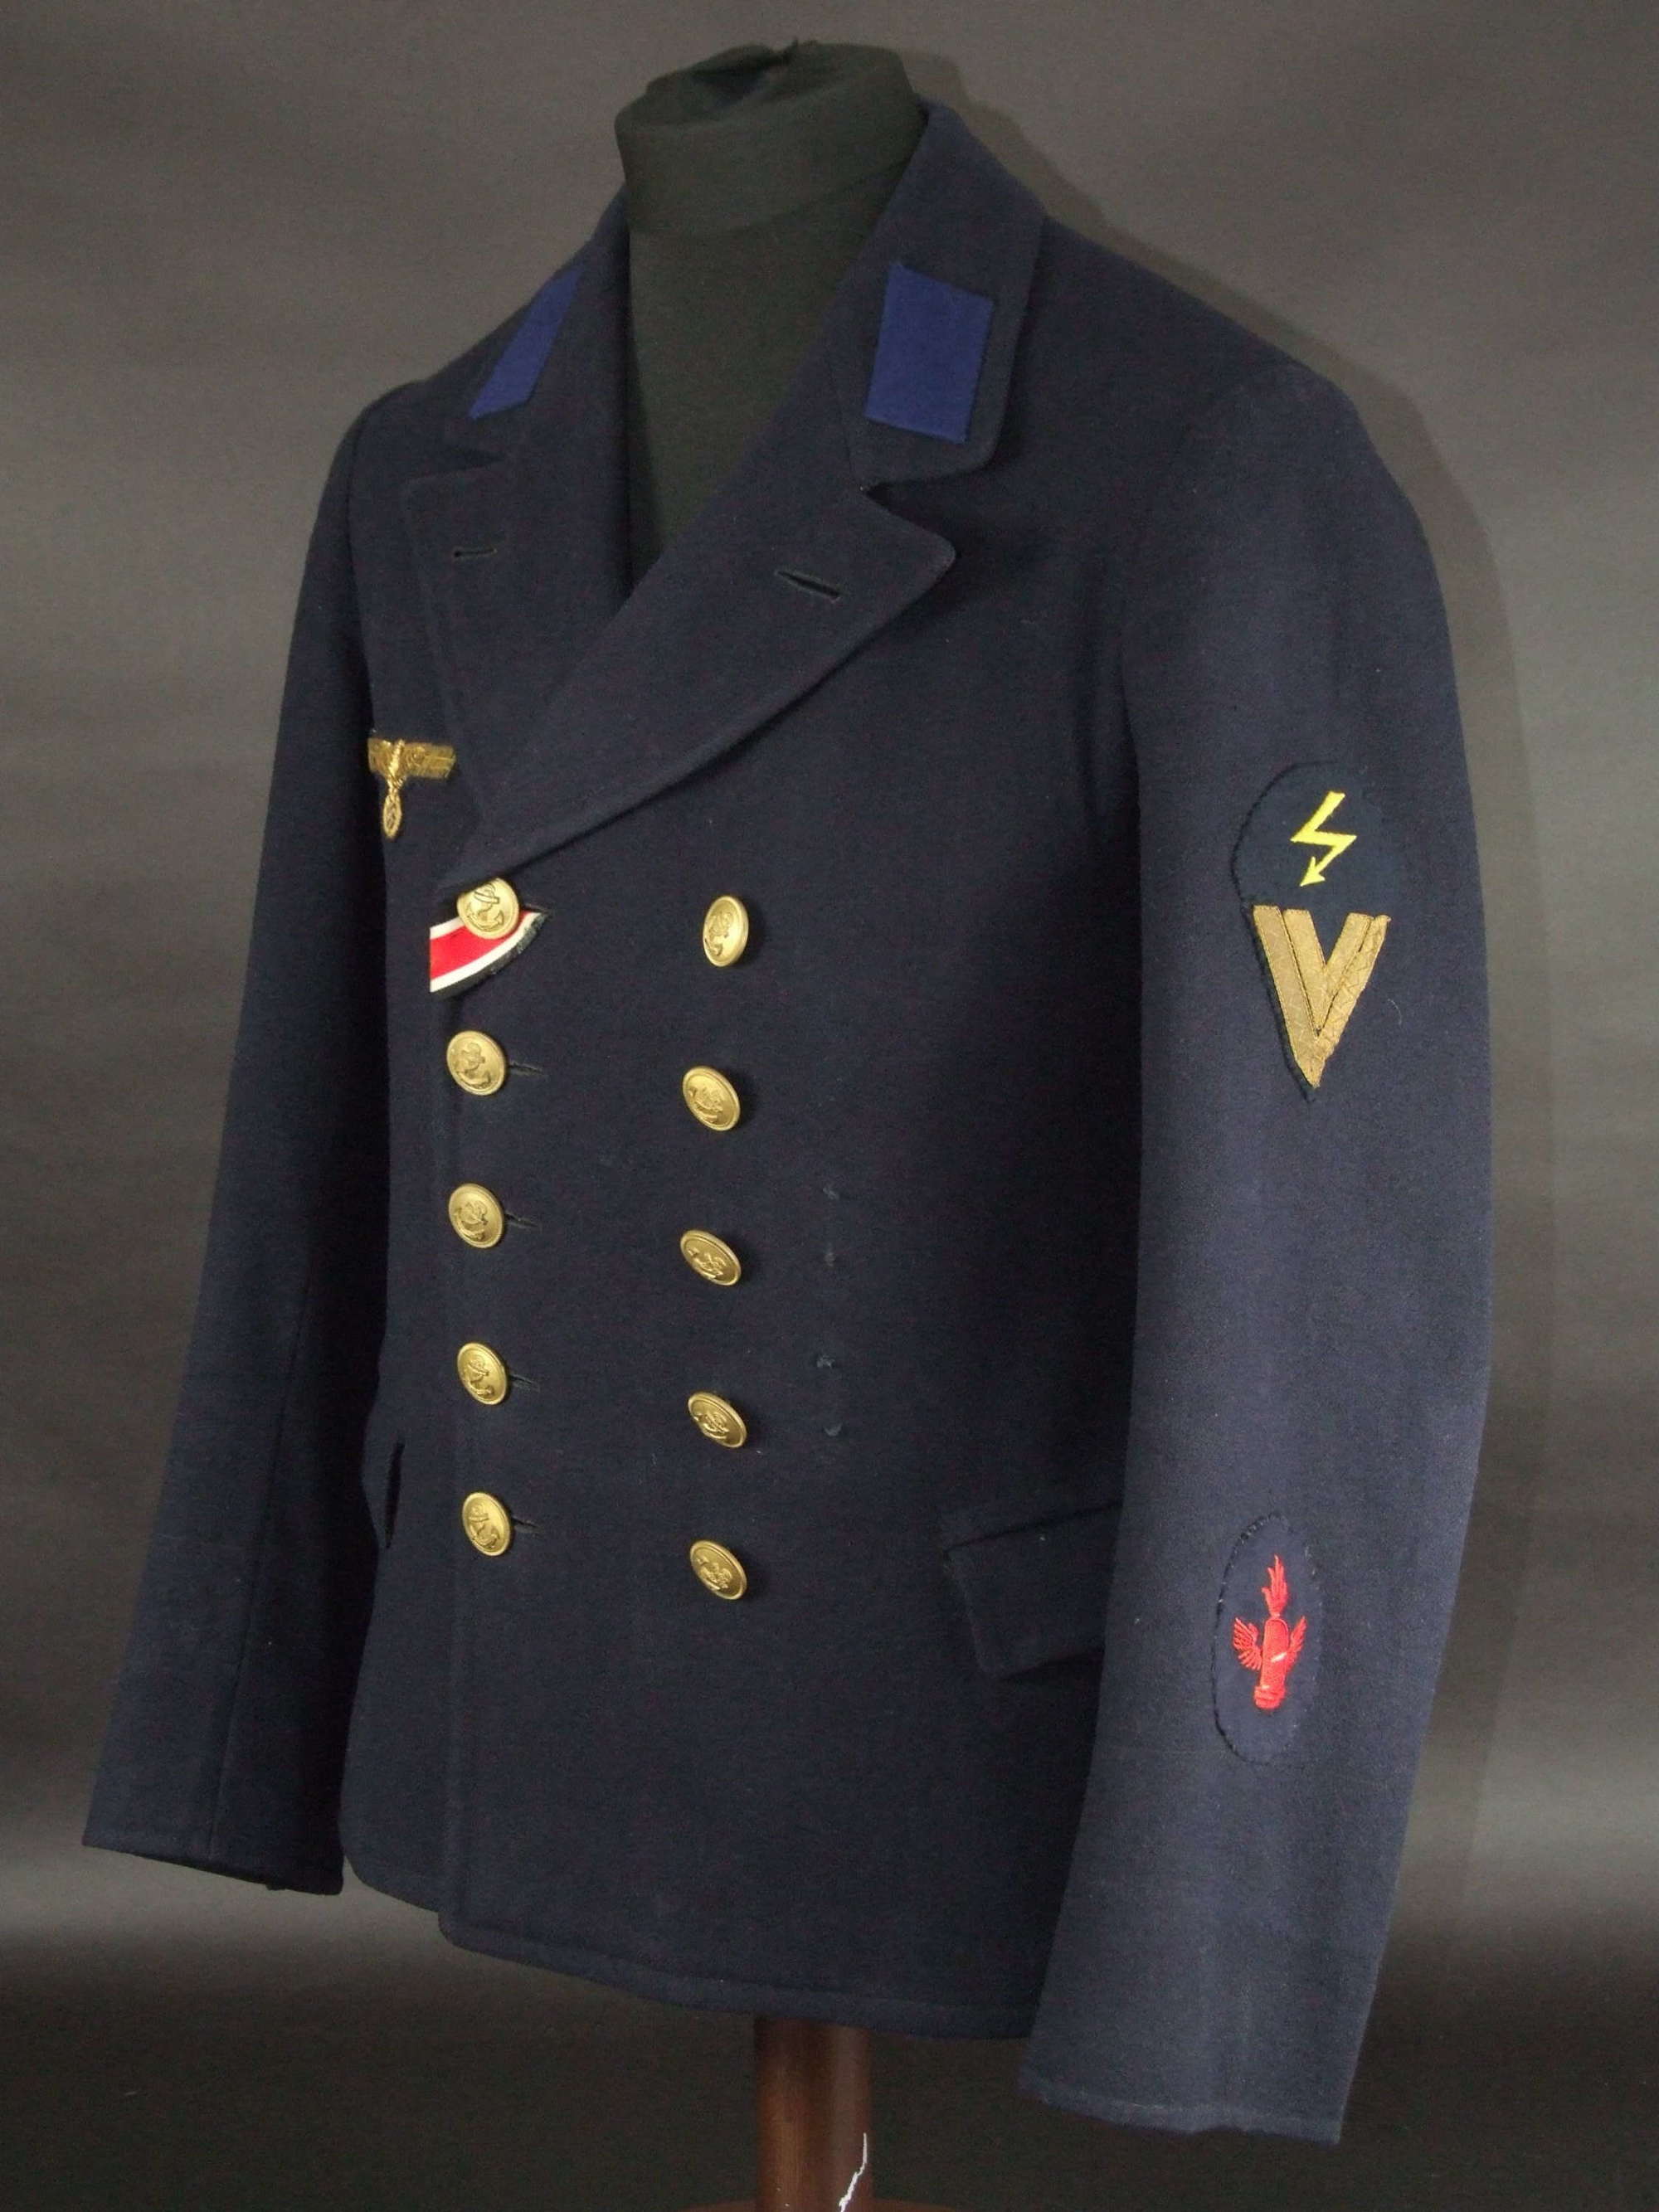 Kriegsmarine Junior NCO's Collani or Pea jacket